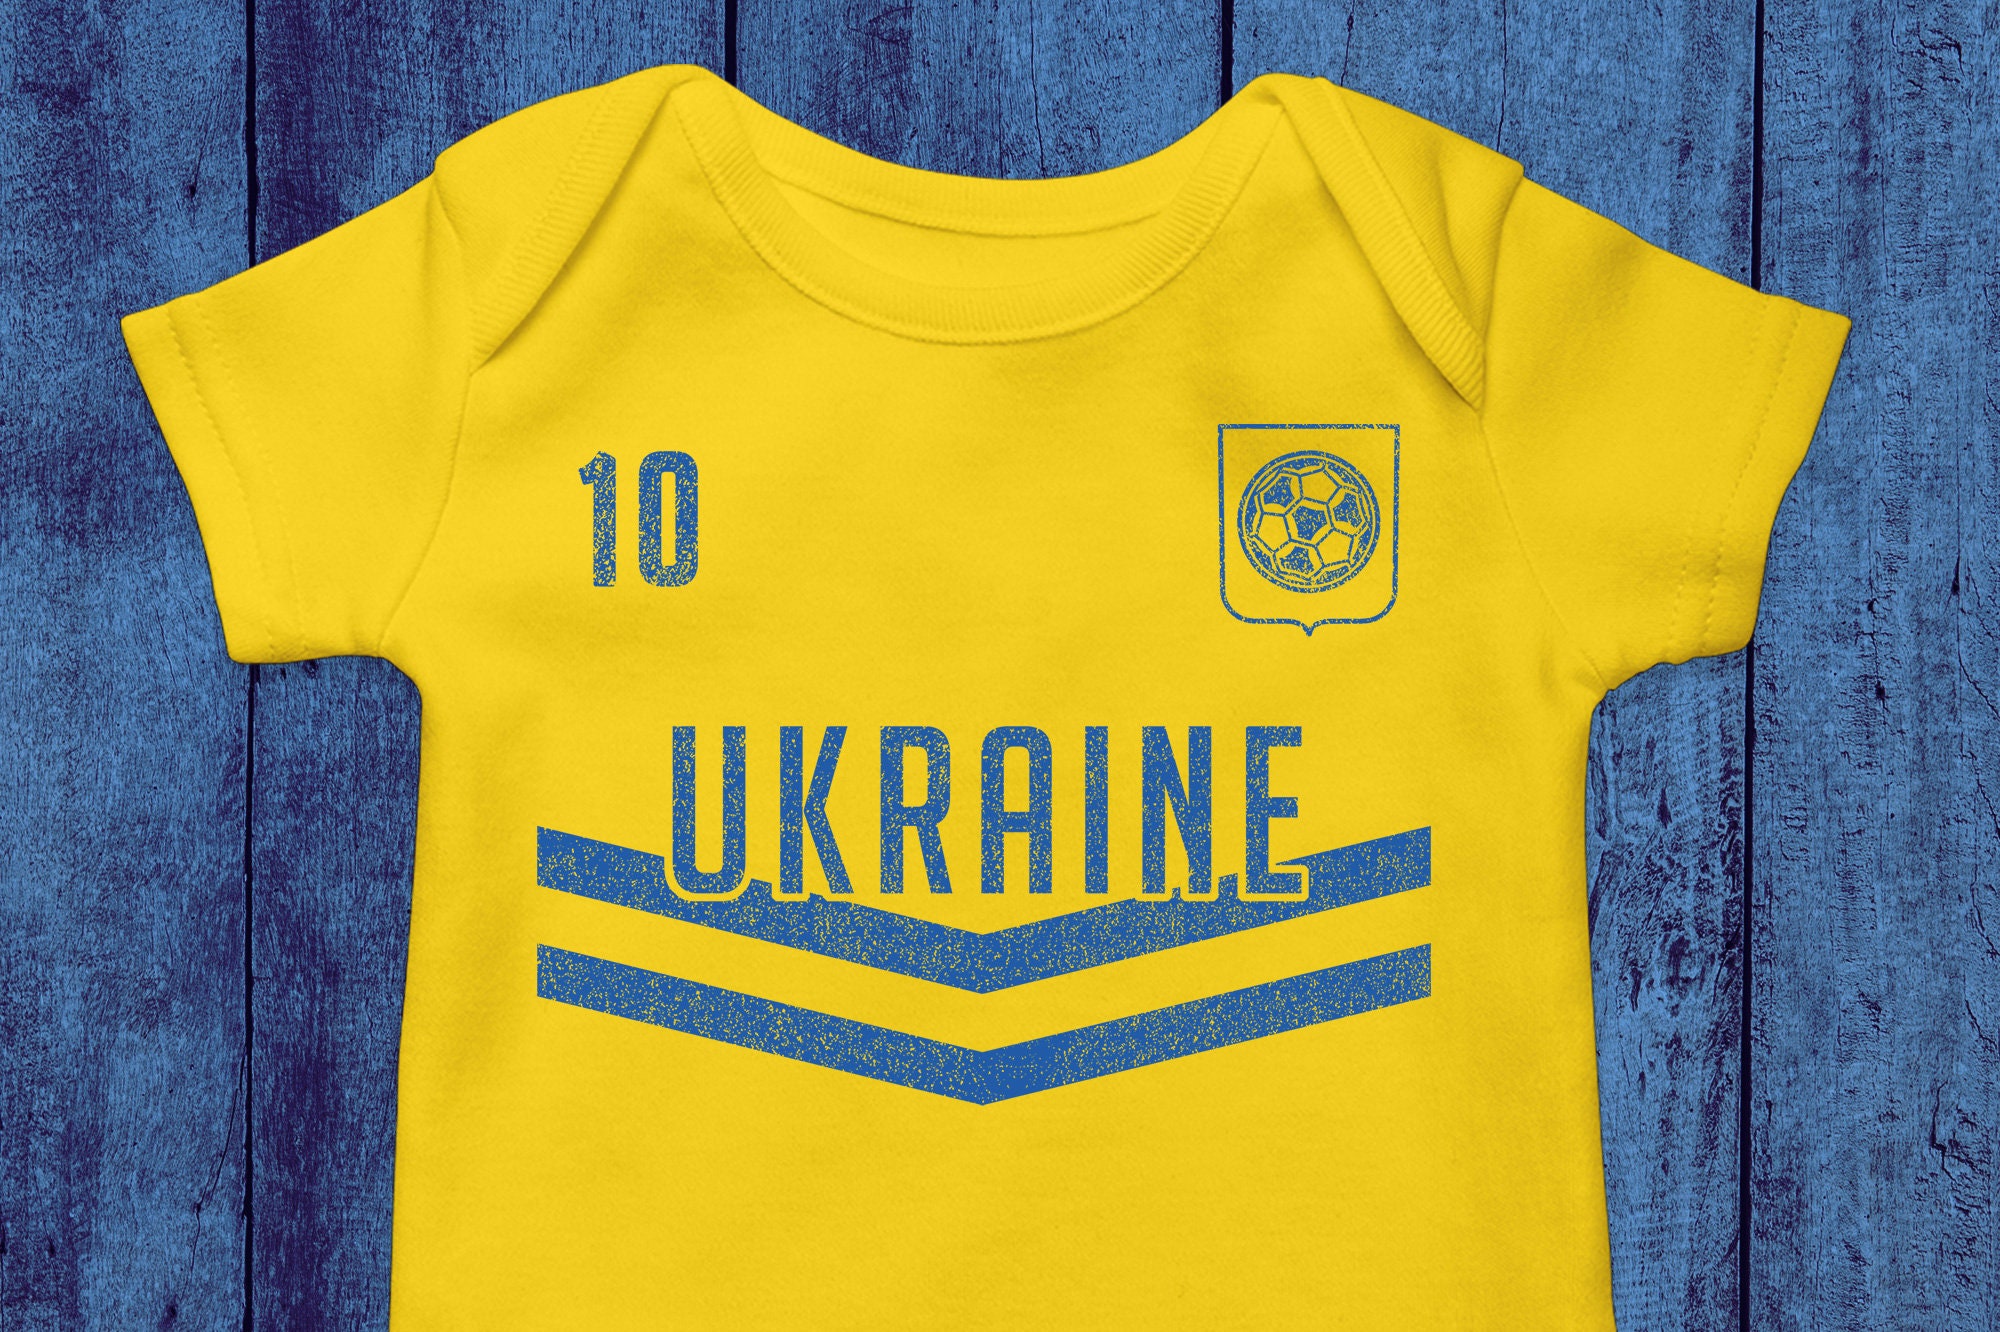 Ukraine Soccer Team Etsy